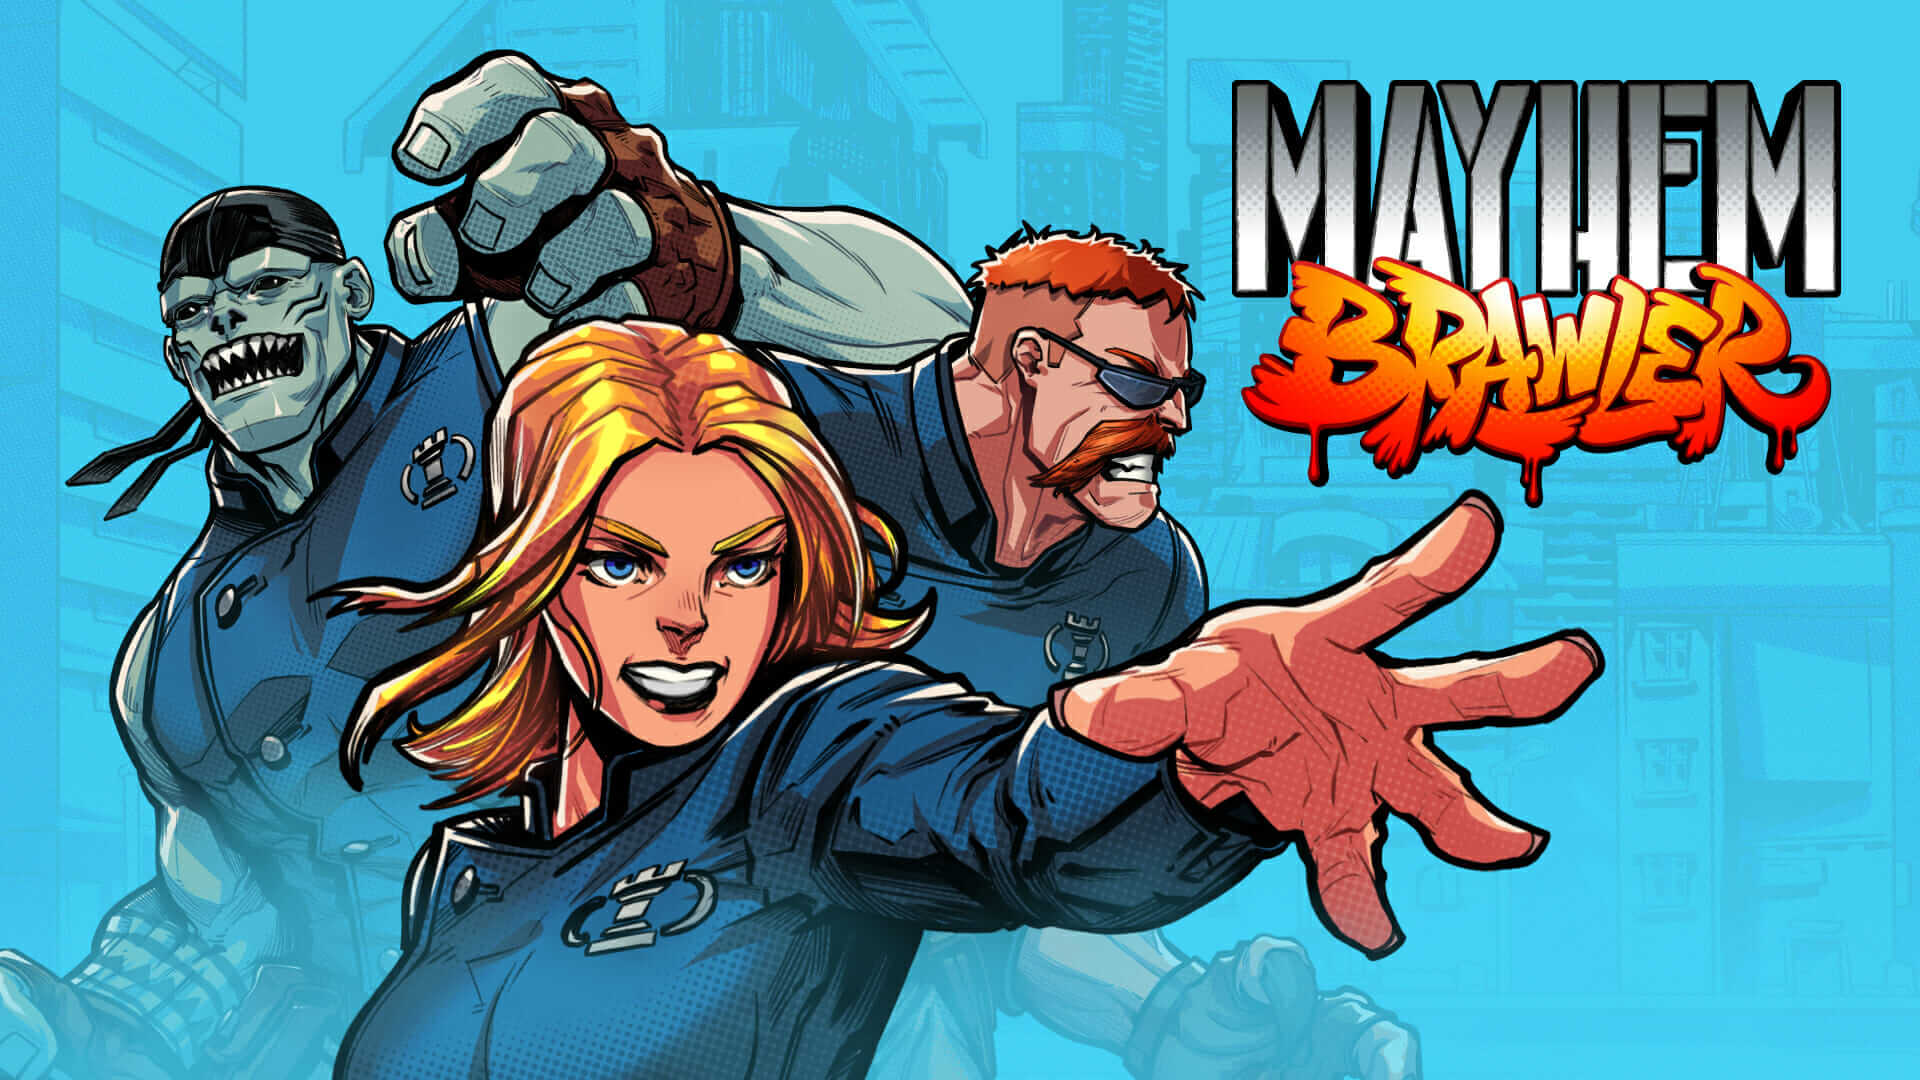 Mayhem Brawler/ Отряд на дежурстве-вторая сюжетная линия / Прохождение #6 Второй Финал